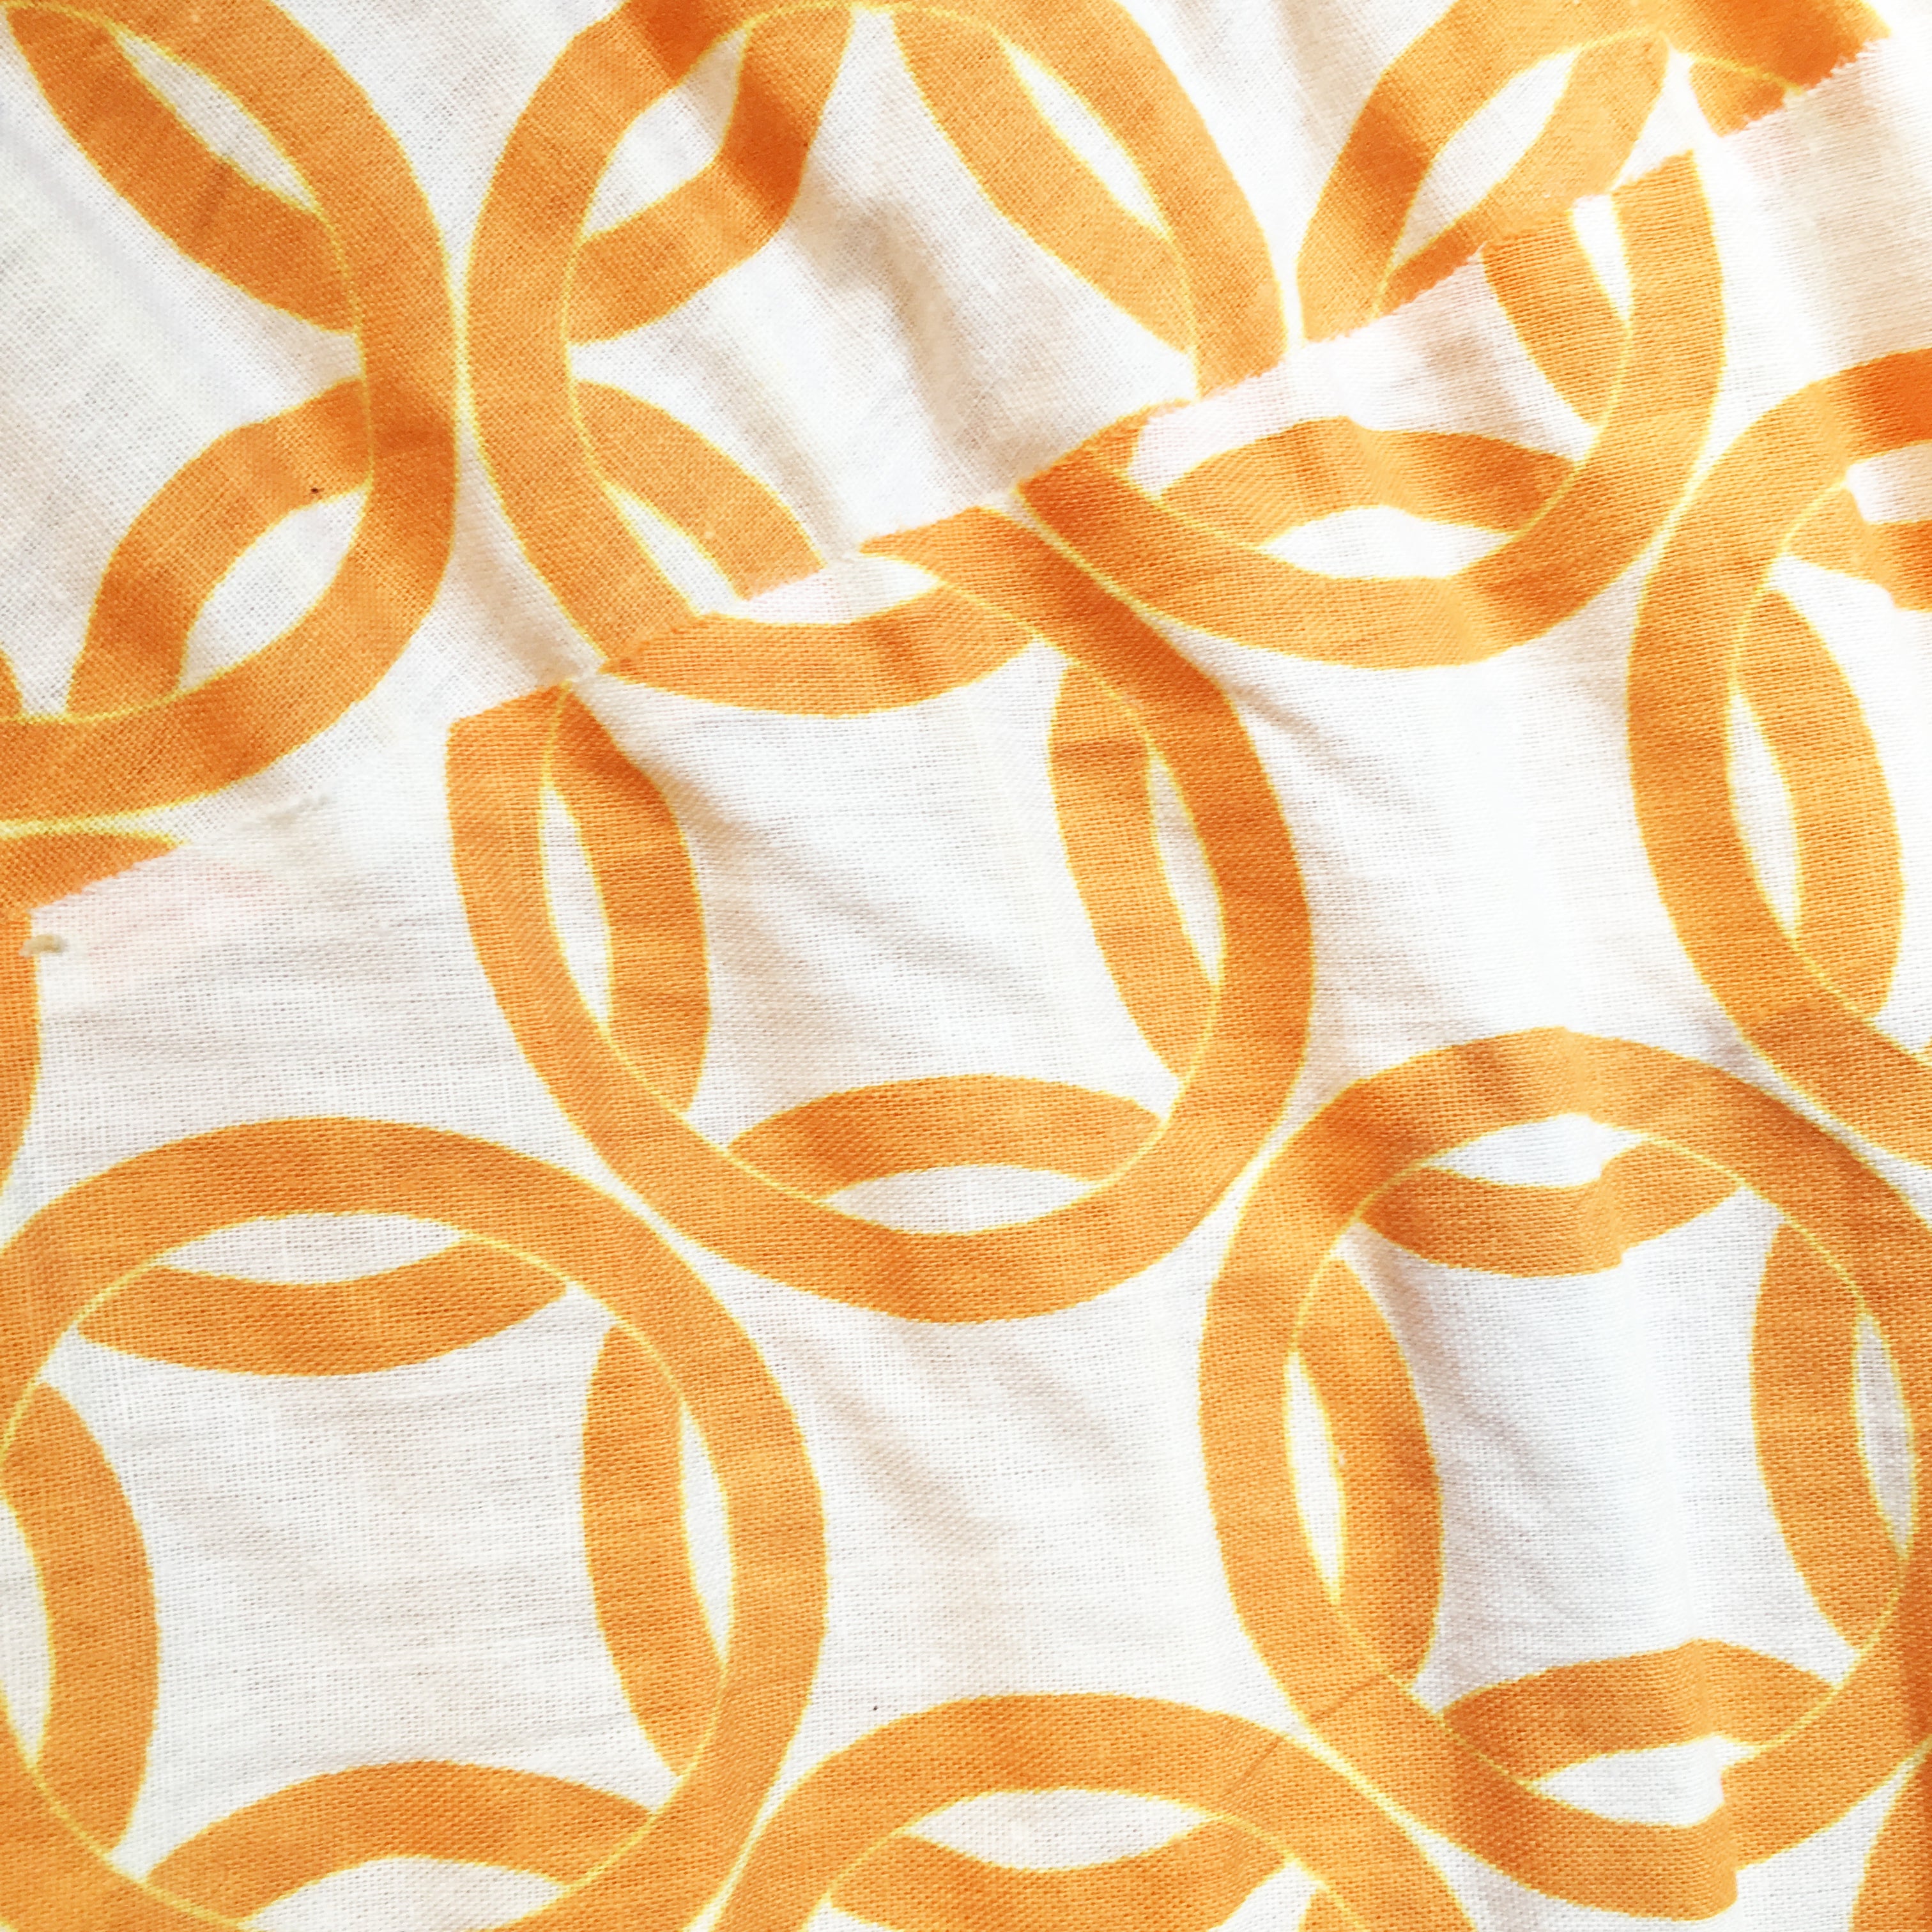 Small 60cm Cream & Orange Ring Cotton Pendant Lampshade